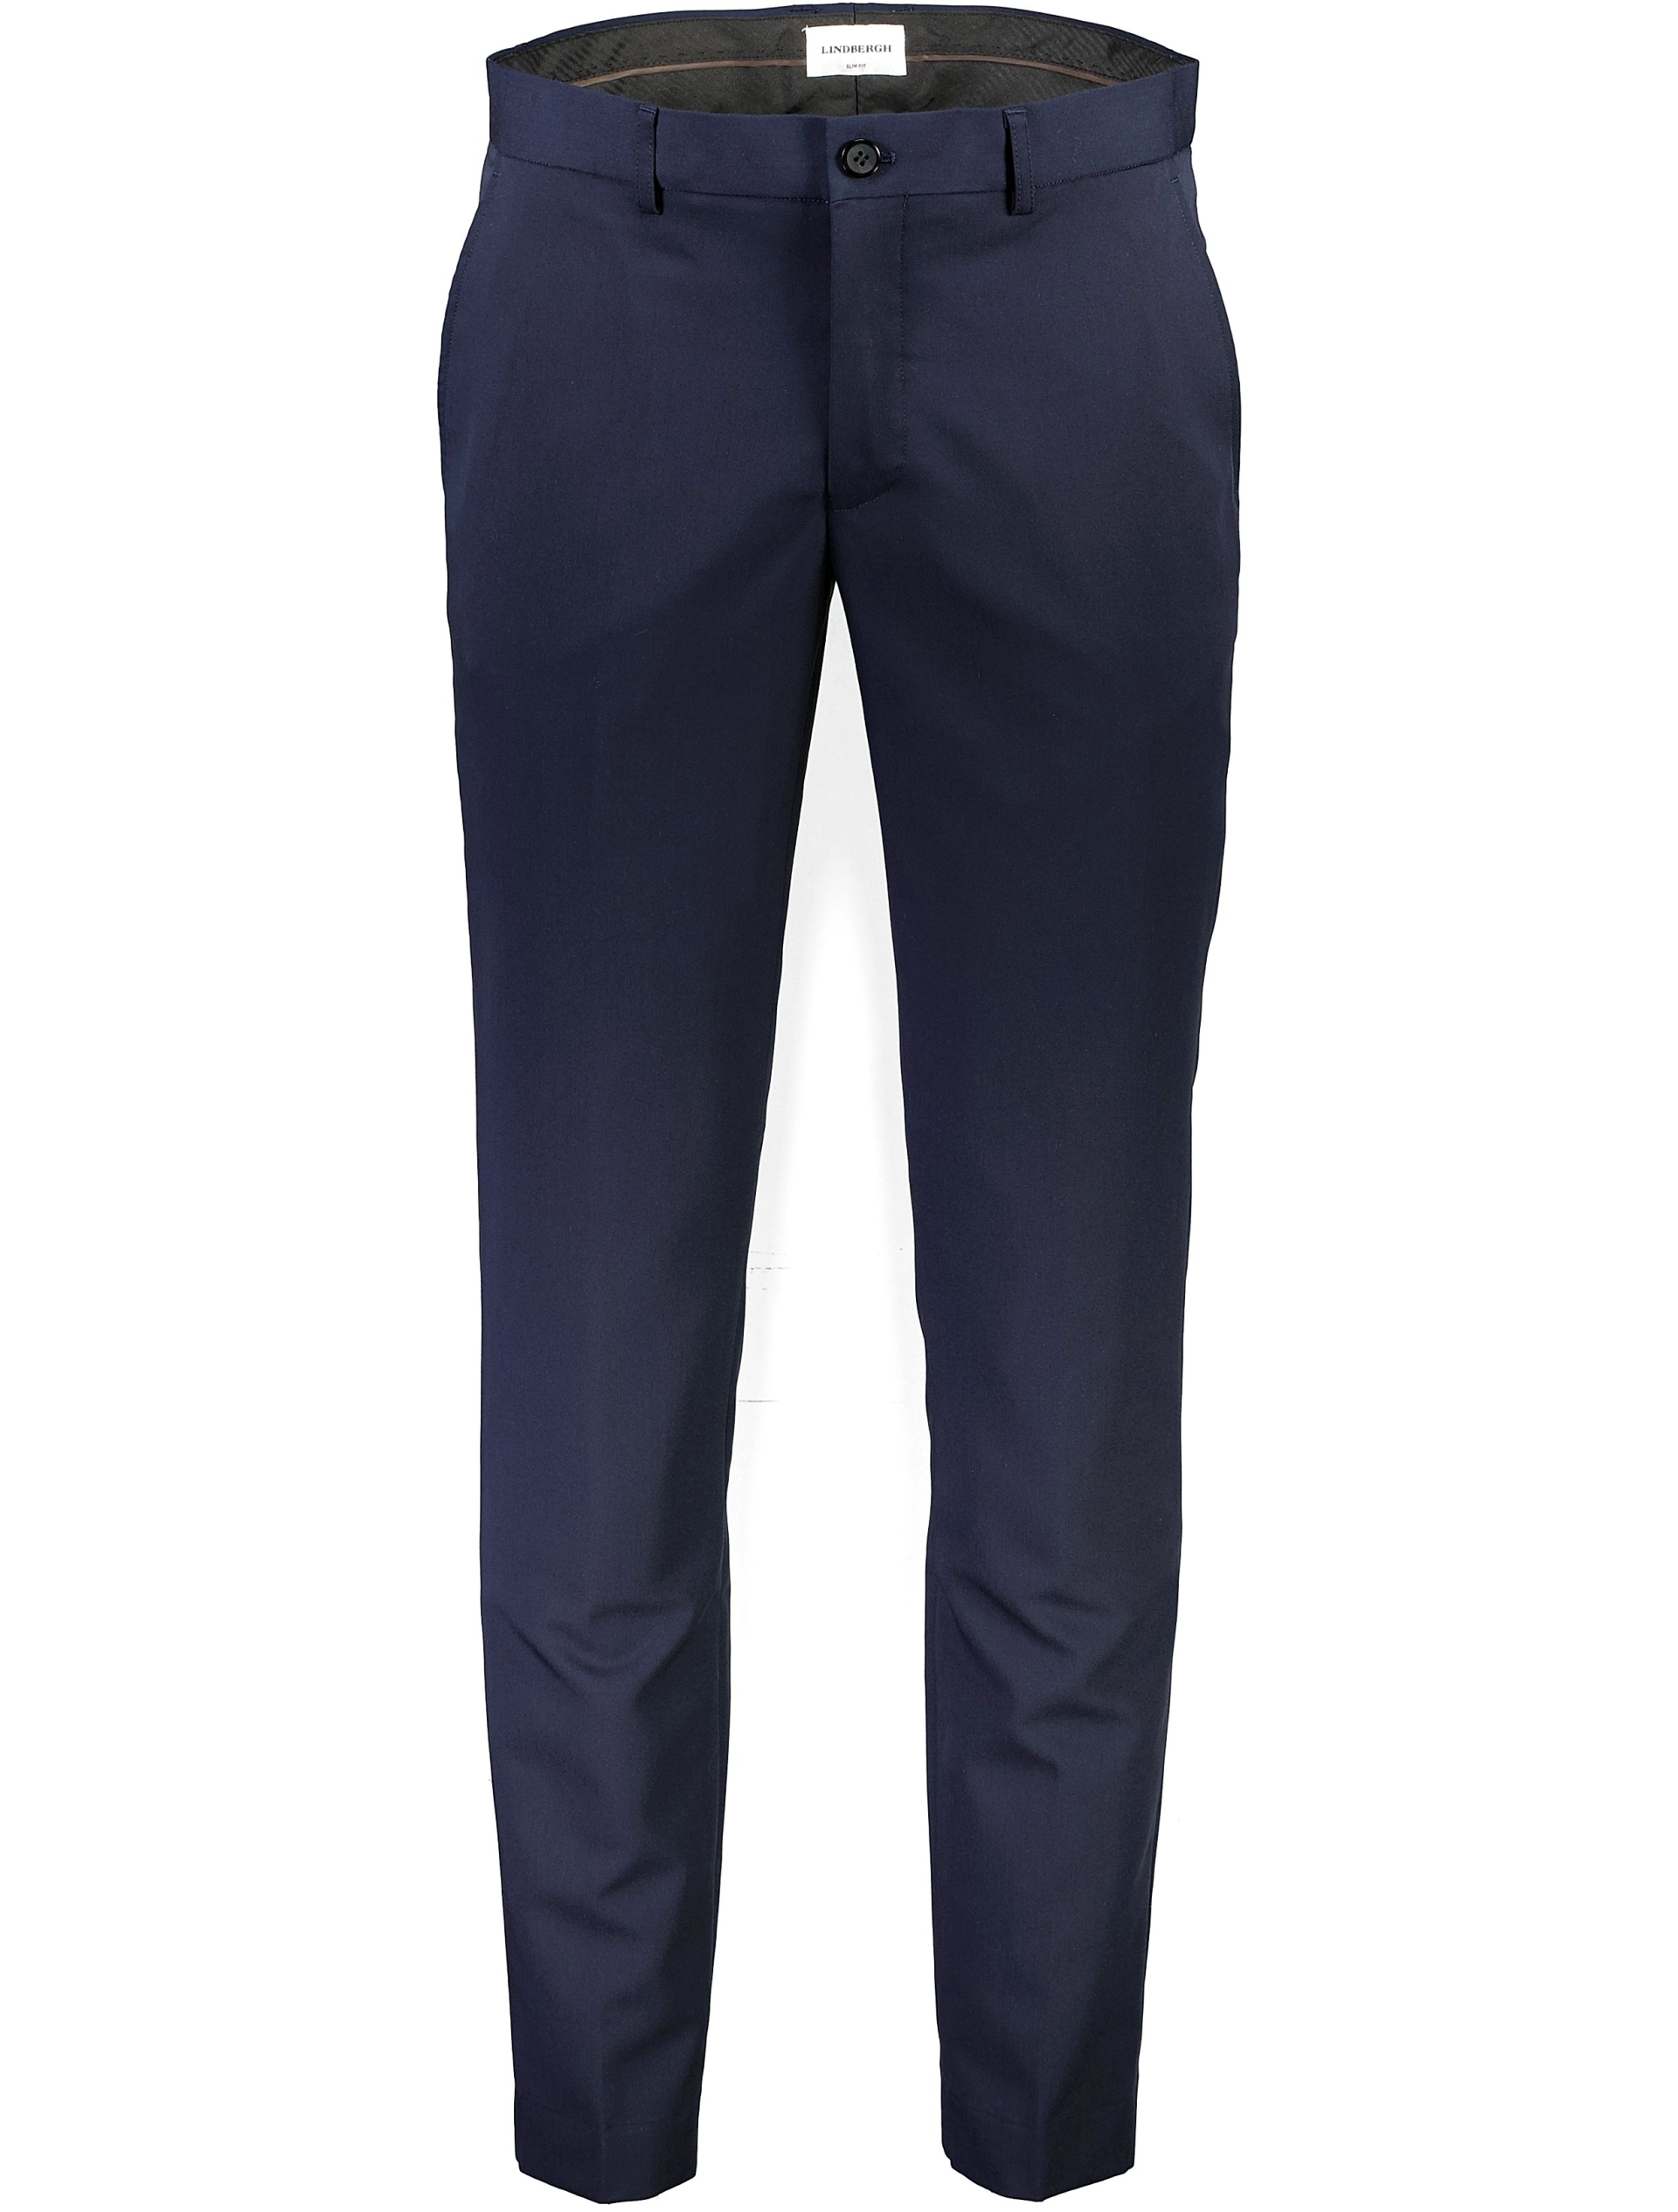 Lindbergh Suit pants blue / navy